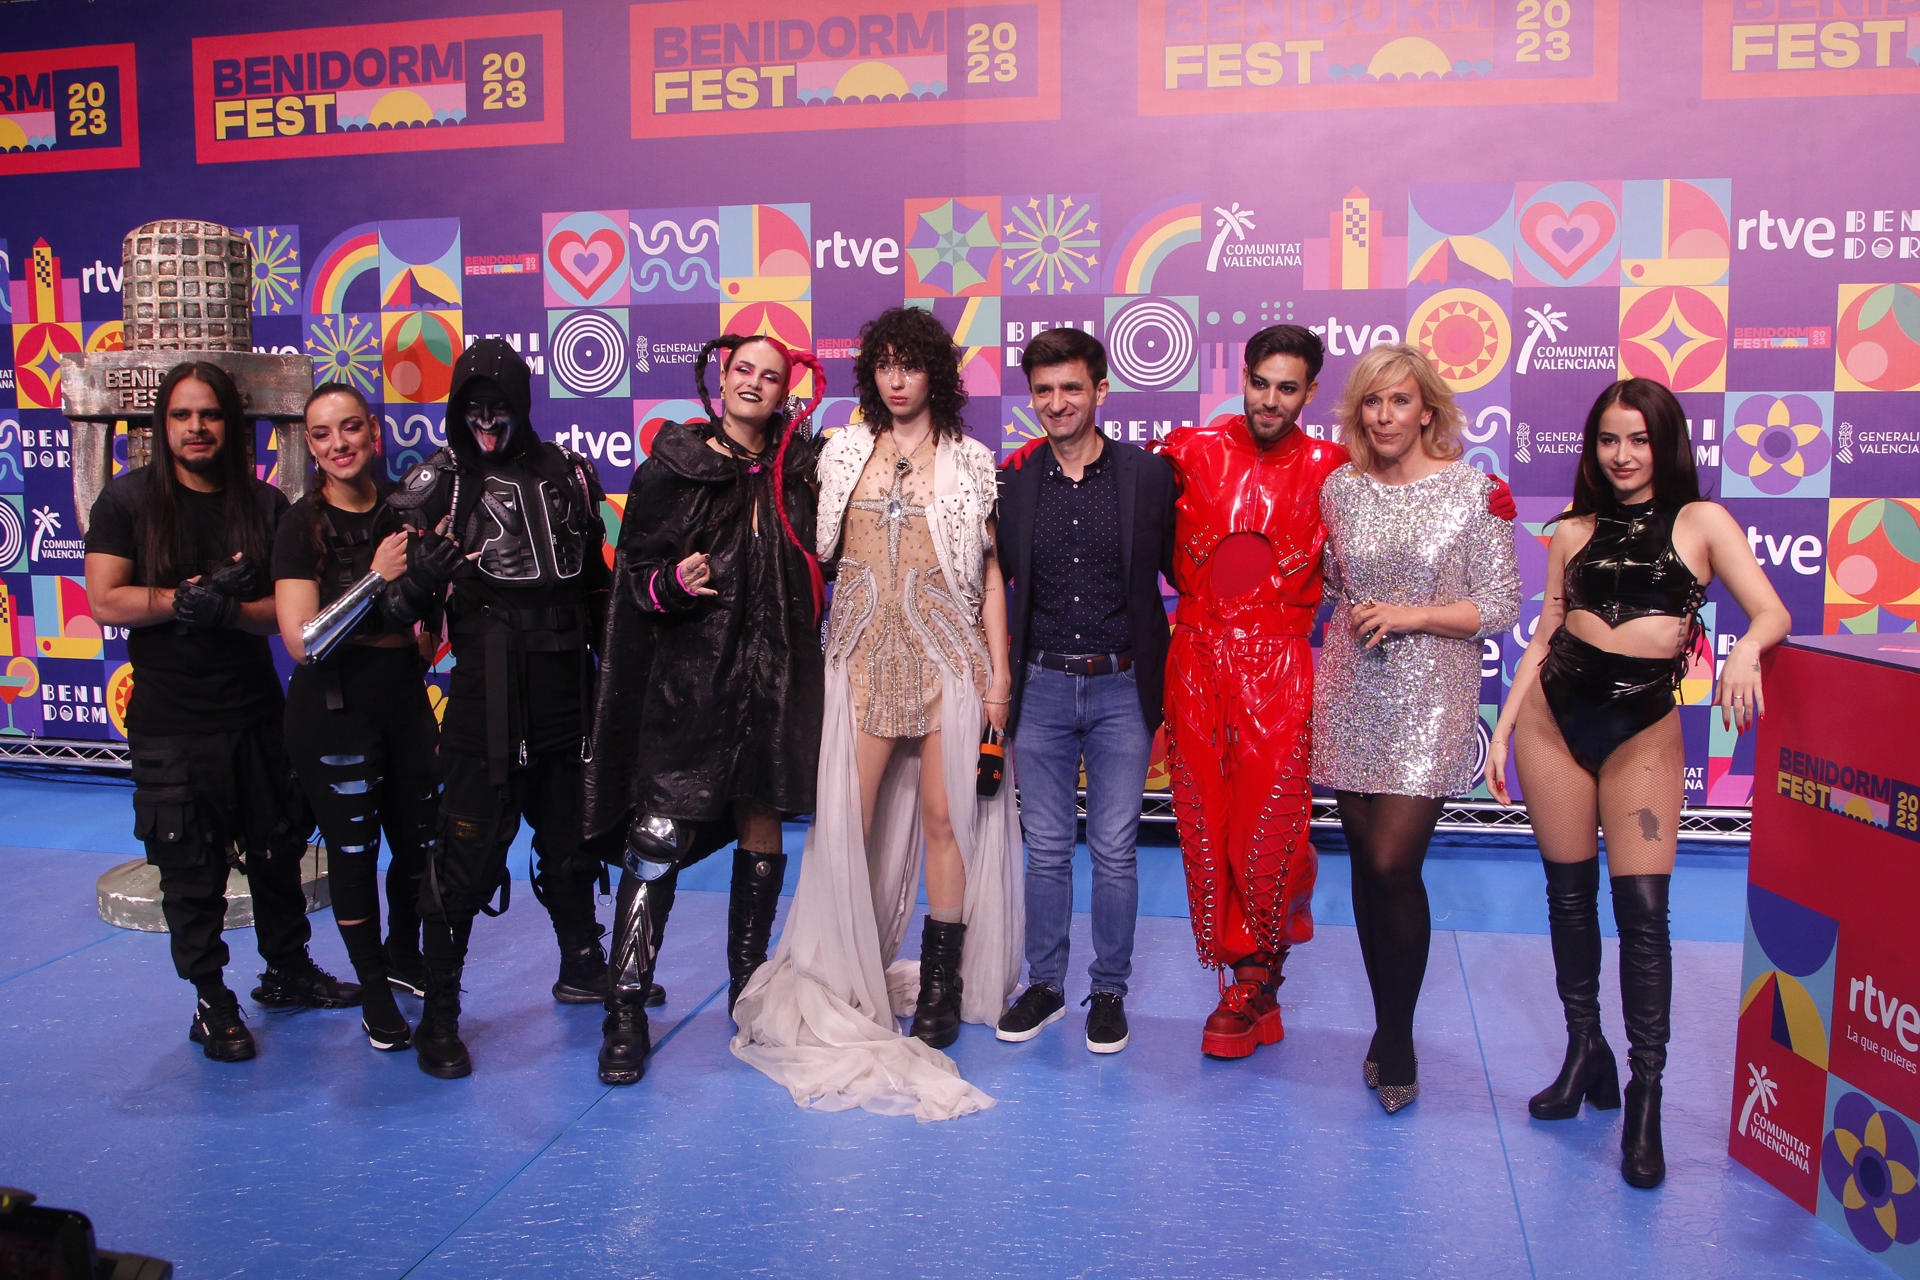 Benidorm Fest. Los cantantes Megara, Alice Wonder, Agoney y Fusa Nocta, son los primeros finalistas del Benidorm Fest 2023.